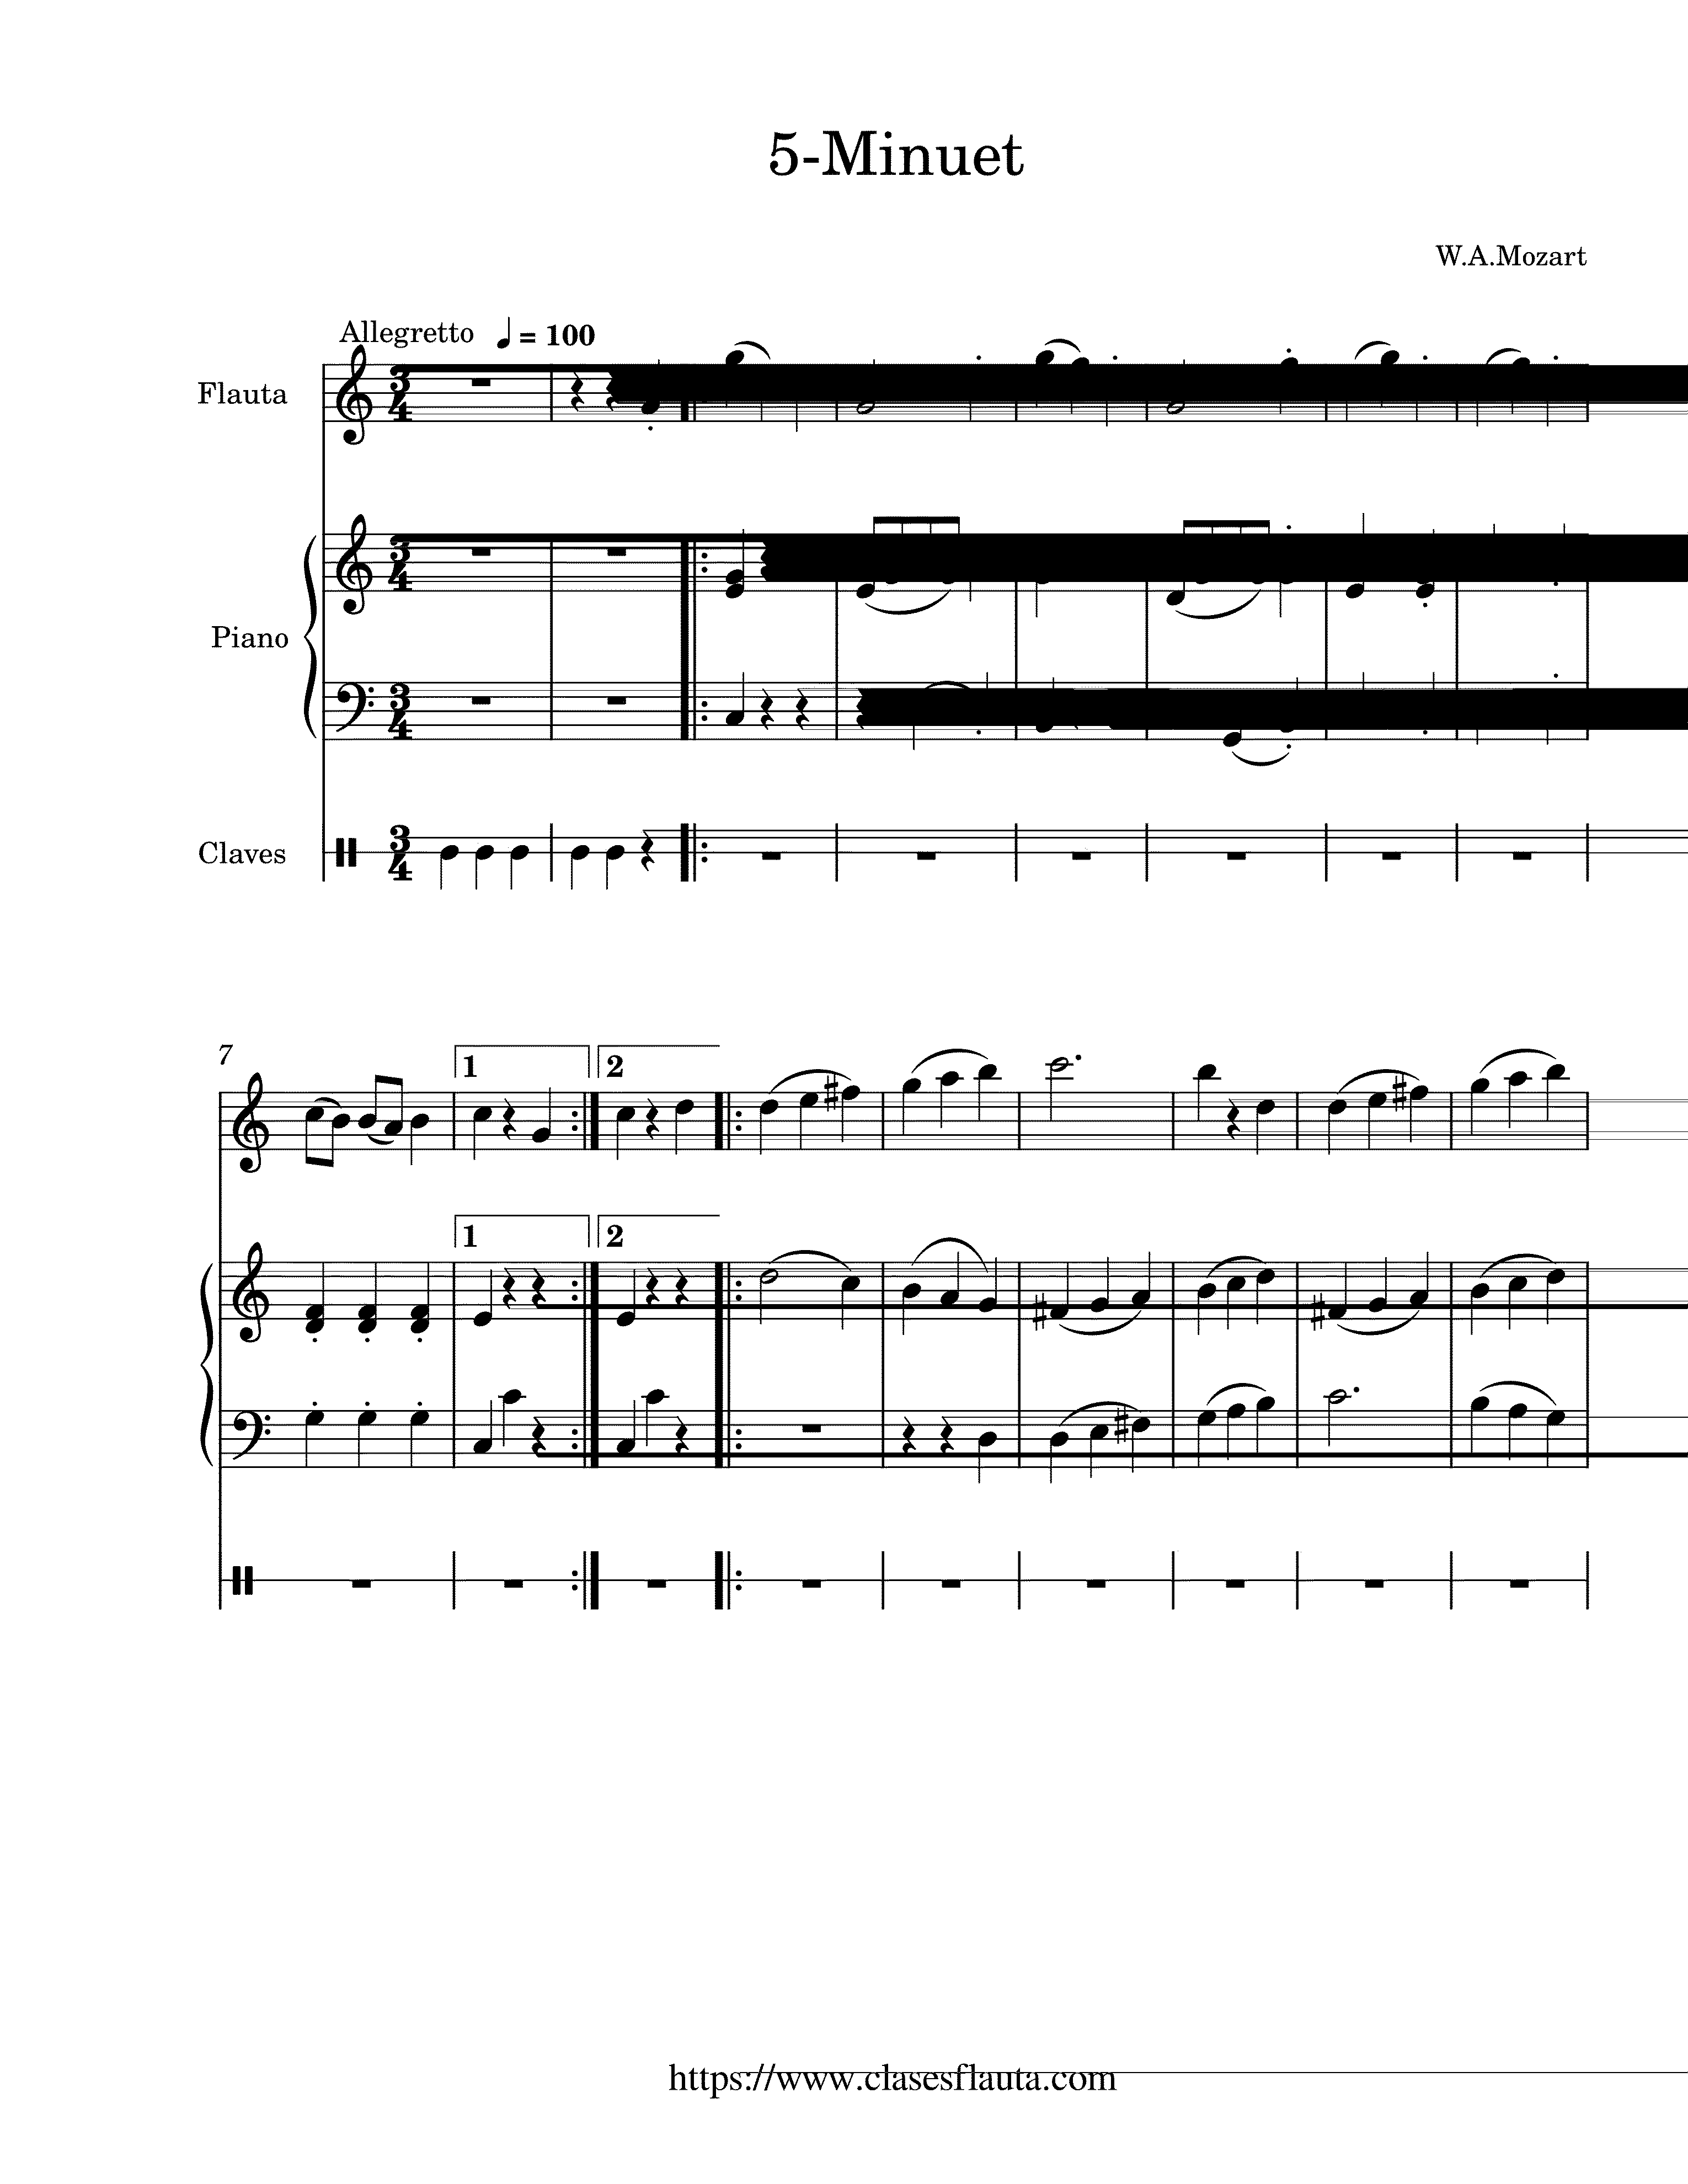 Partitura Minueto de Mozart